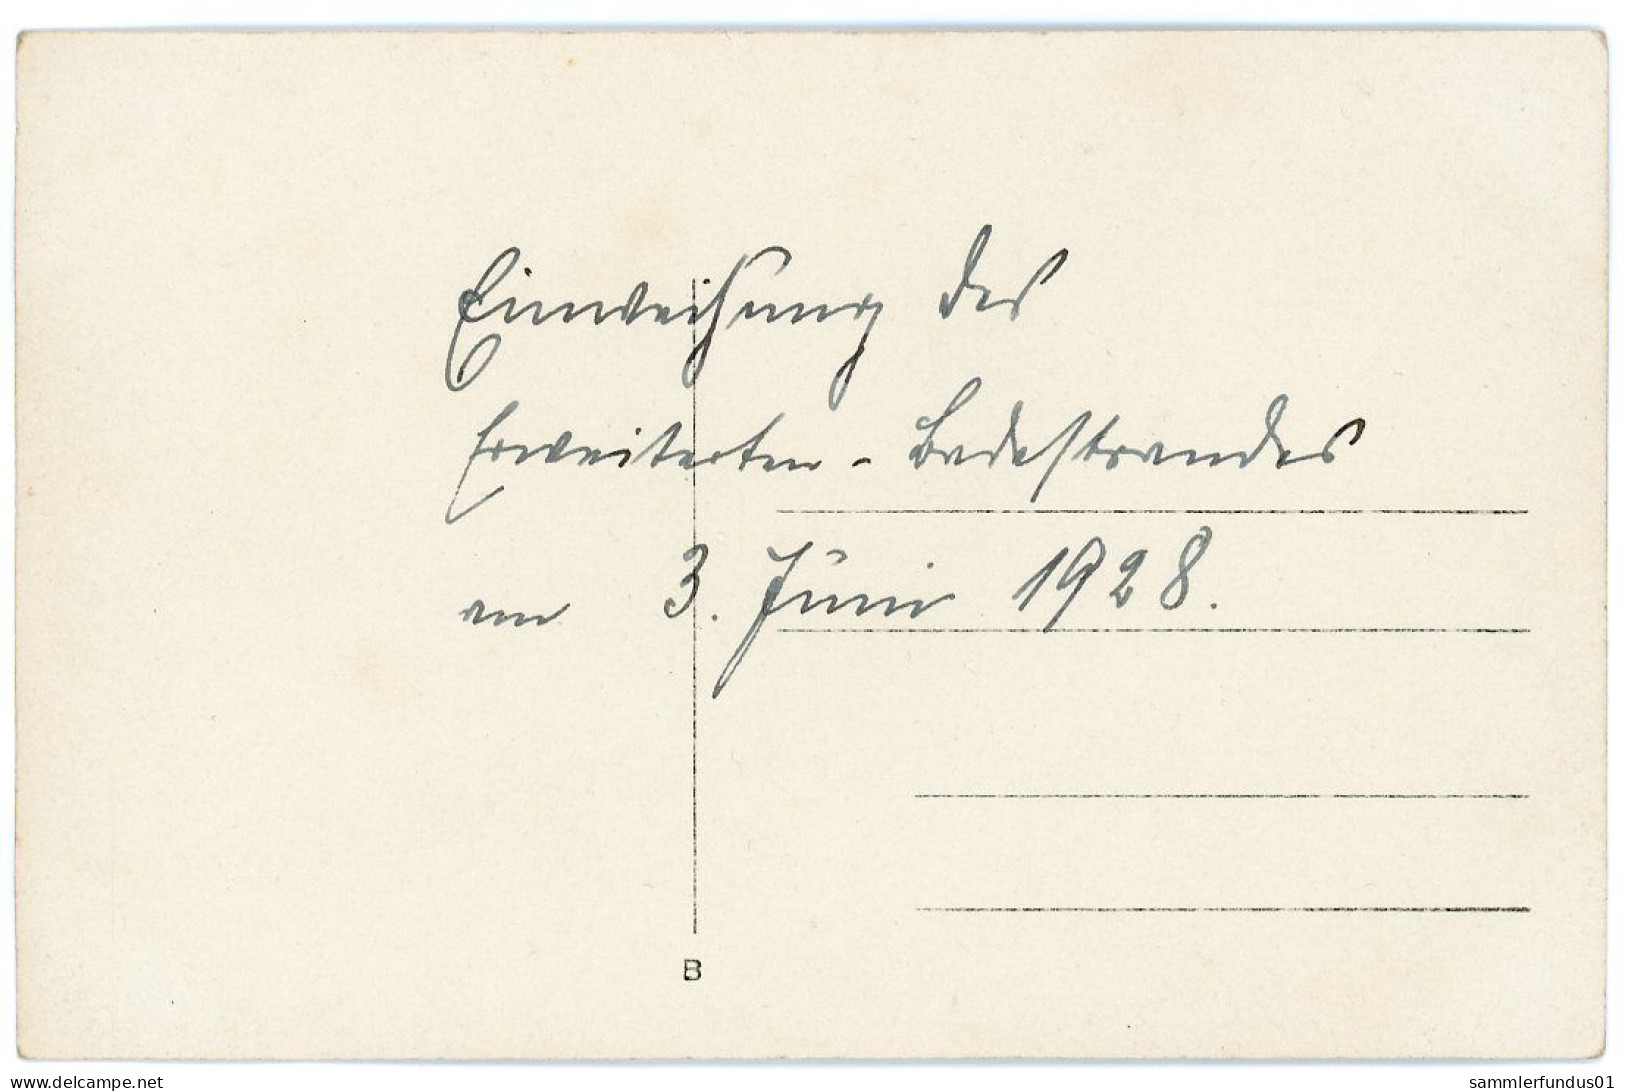 Foto AK/CP Goldberg  Einweihung Badestrand   Ungel/uncirc. 1928    Erhaltung/Cond. 1-   Nr. 1667 - Goldberg